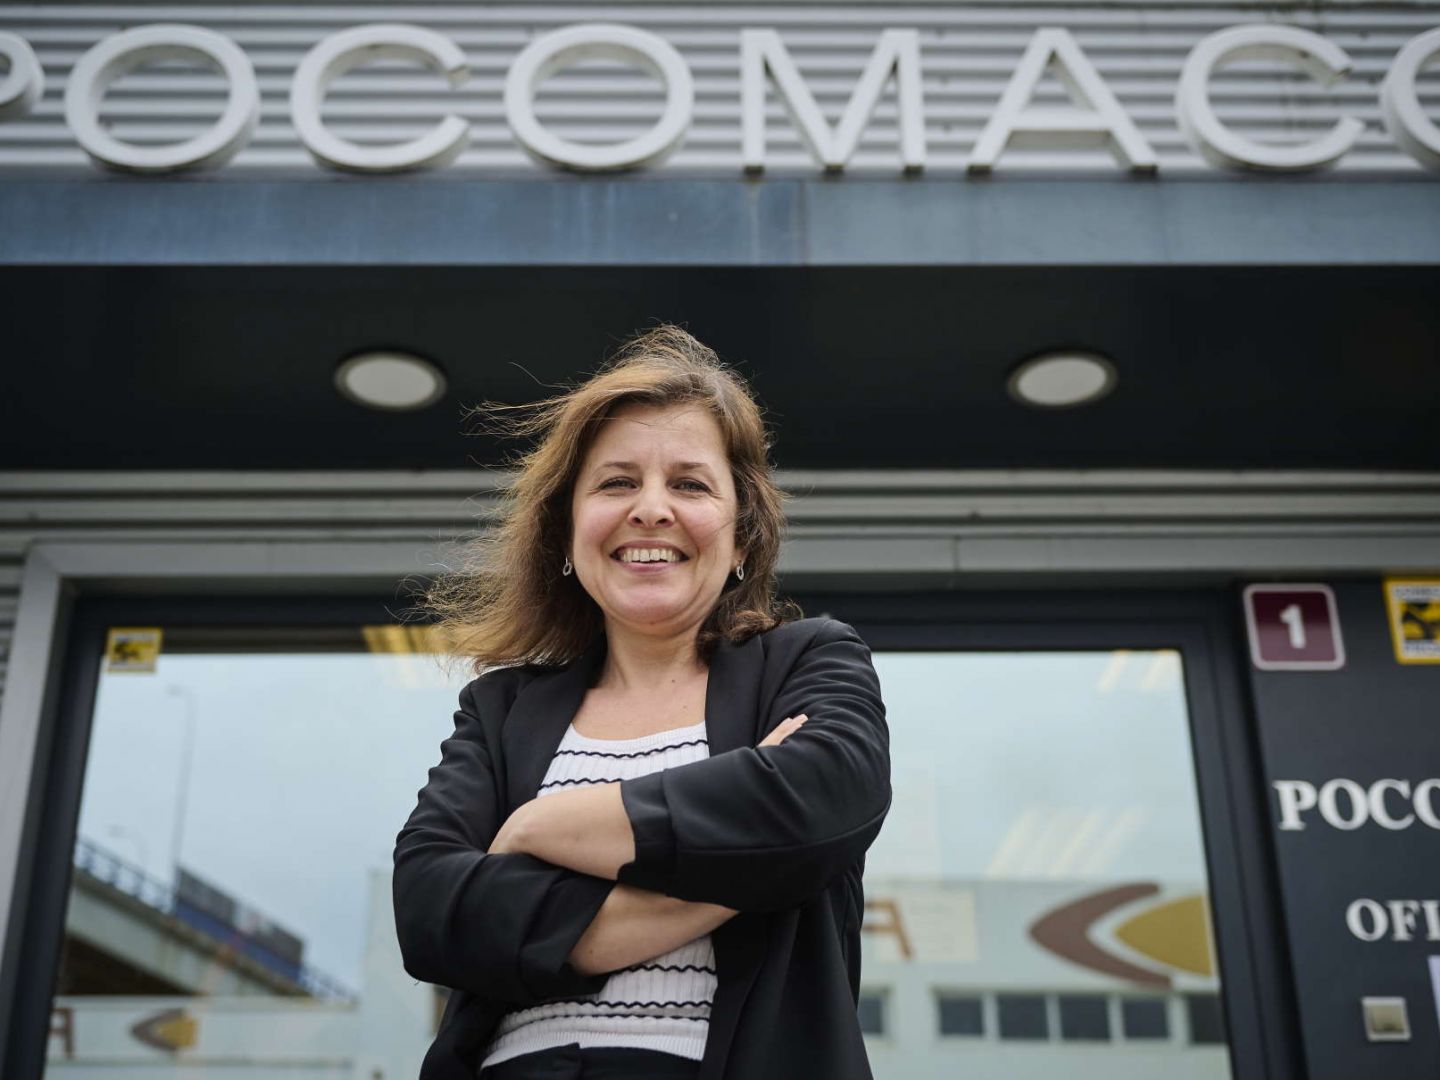 Presidenta del de Pocomaco, en A Coruña: "Queremos recepcionados por el Concello"